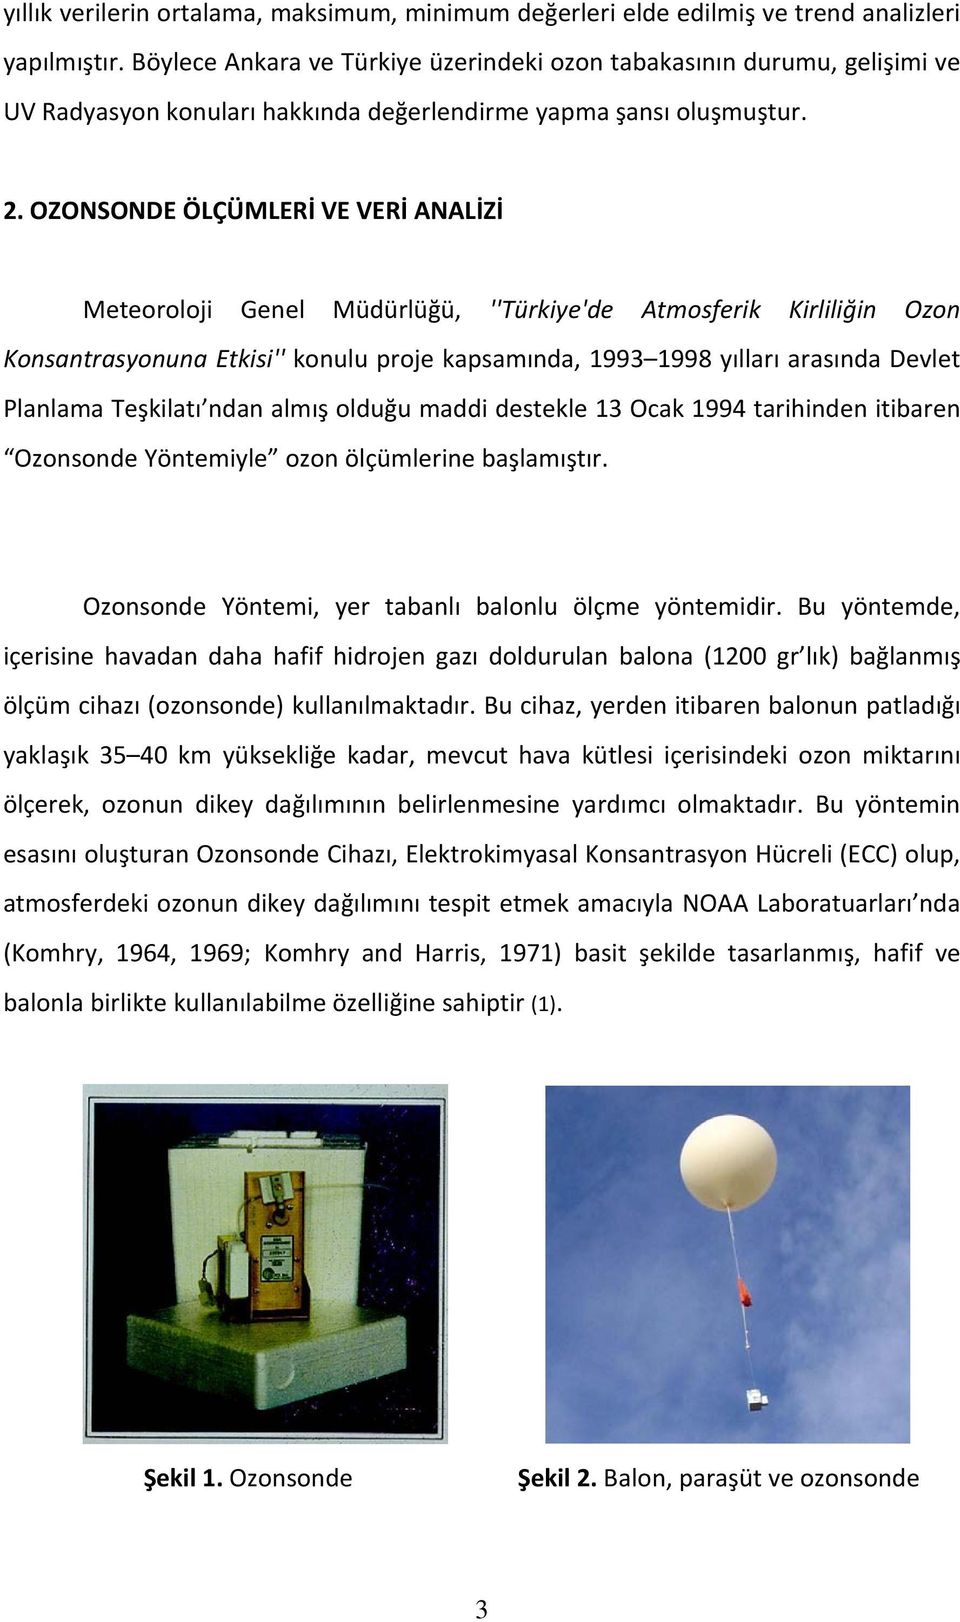 OZONSONDE ÖLÇÜMLERİ VE VERİ ANALİZİ Meteoroloji Genel Müdürlüğü, ''Türkiye'de Atmosferik Kirliliğin Ozon Konsantrasyonuna Etkisi'' konulu proje kapsamında, 1993 1998 yılları arasında Devlet Planlama